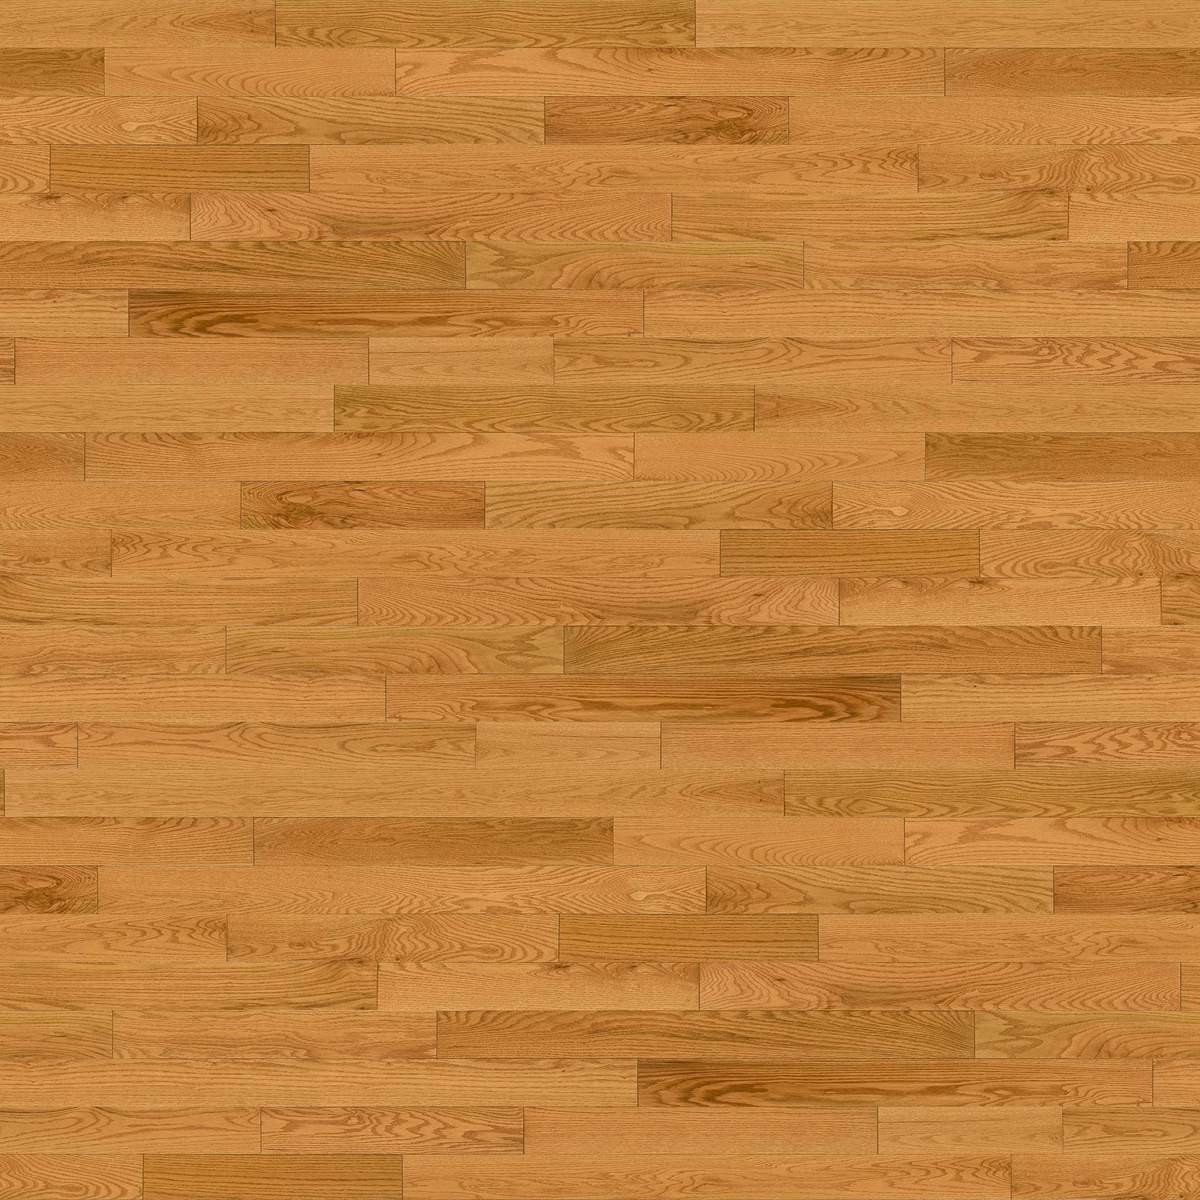 Solid Red Oak Honey 4 1 Excel, Red Oak Natural Solid Hardwood Flooring